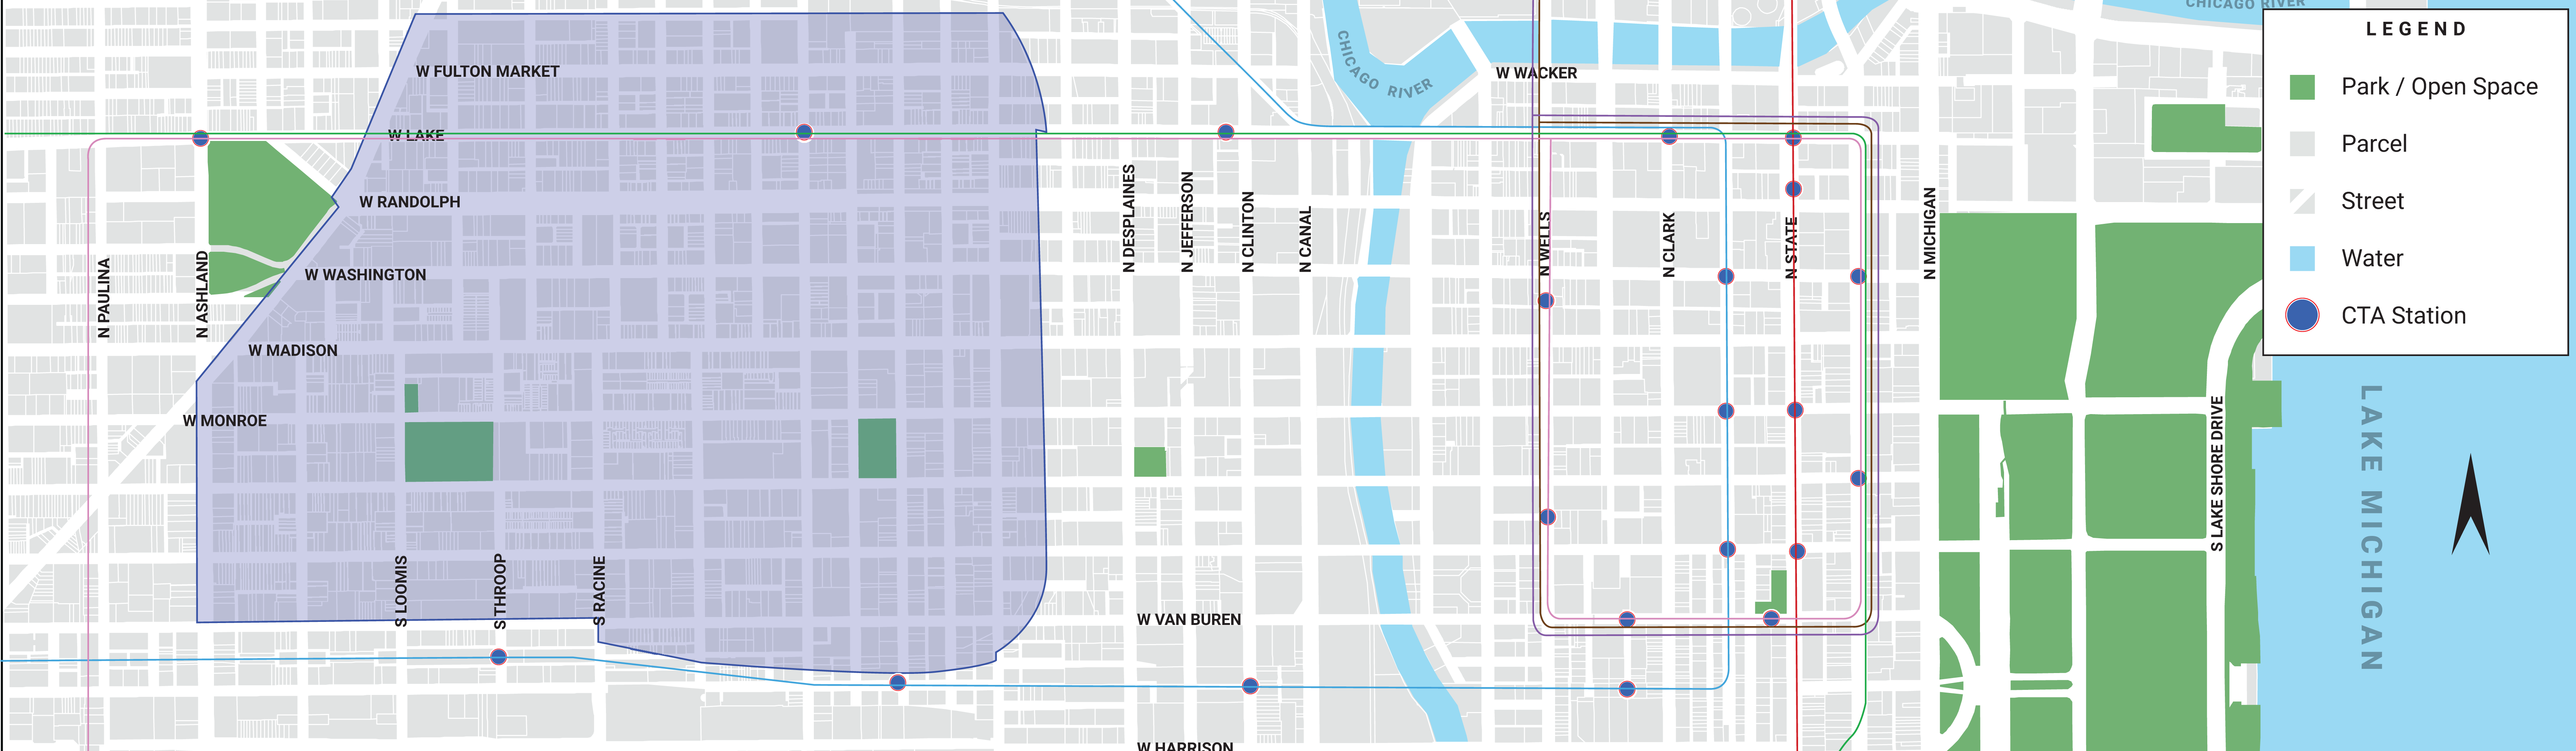 West Loop Design Guidelines Map